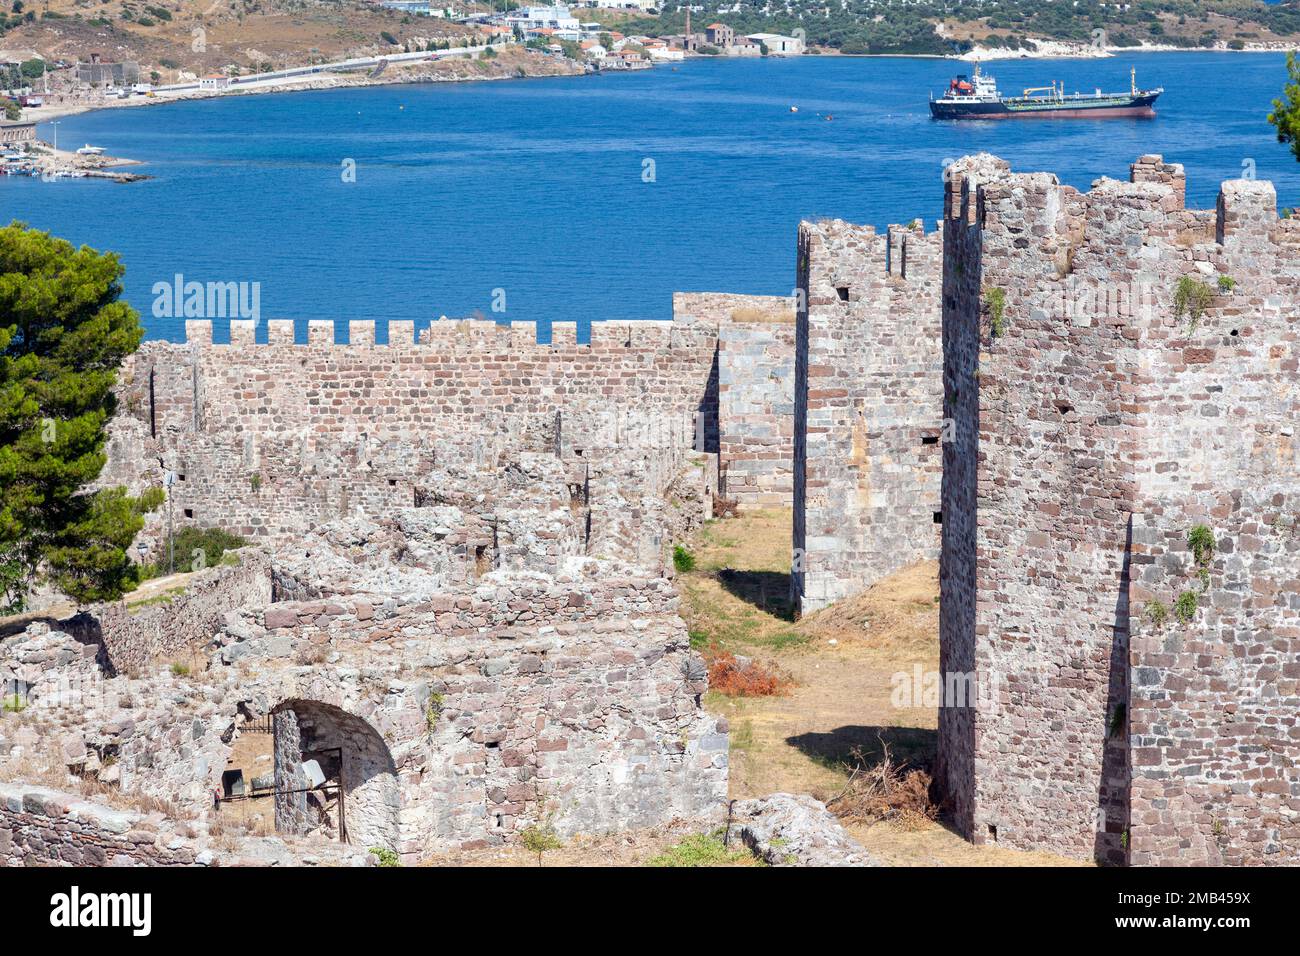 Teilblick auf die mittelalterliche Burg Mytilene auf der Insel Lesvos, Griechenland, Europa. Das Fort wurde während der byzantinischen Ära (nach älteren Überresten) erbaut. Stockfoto